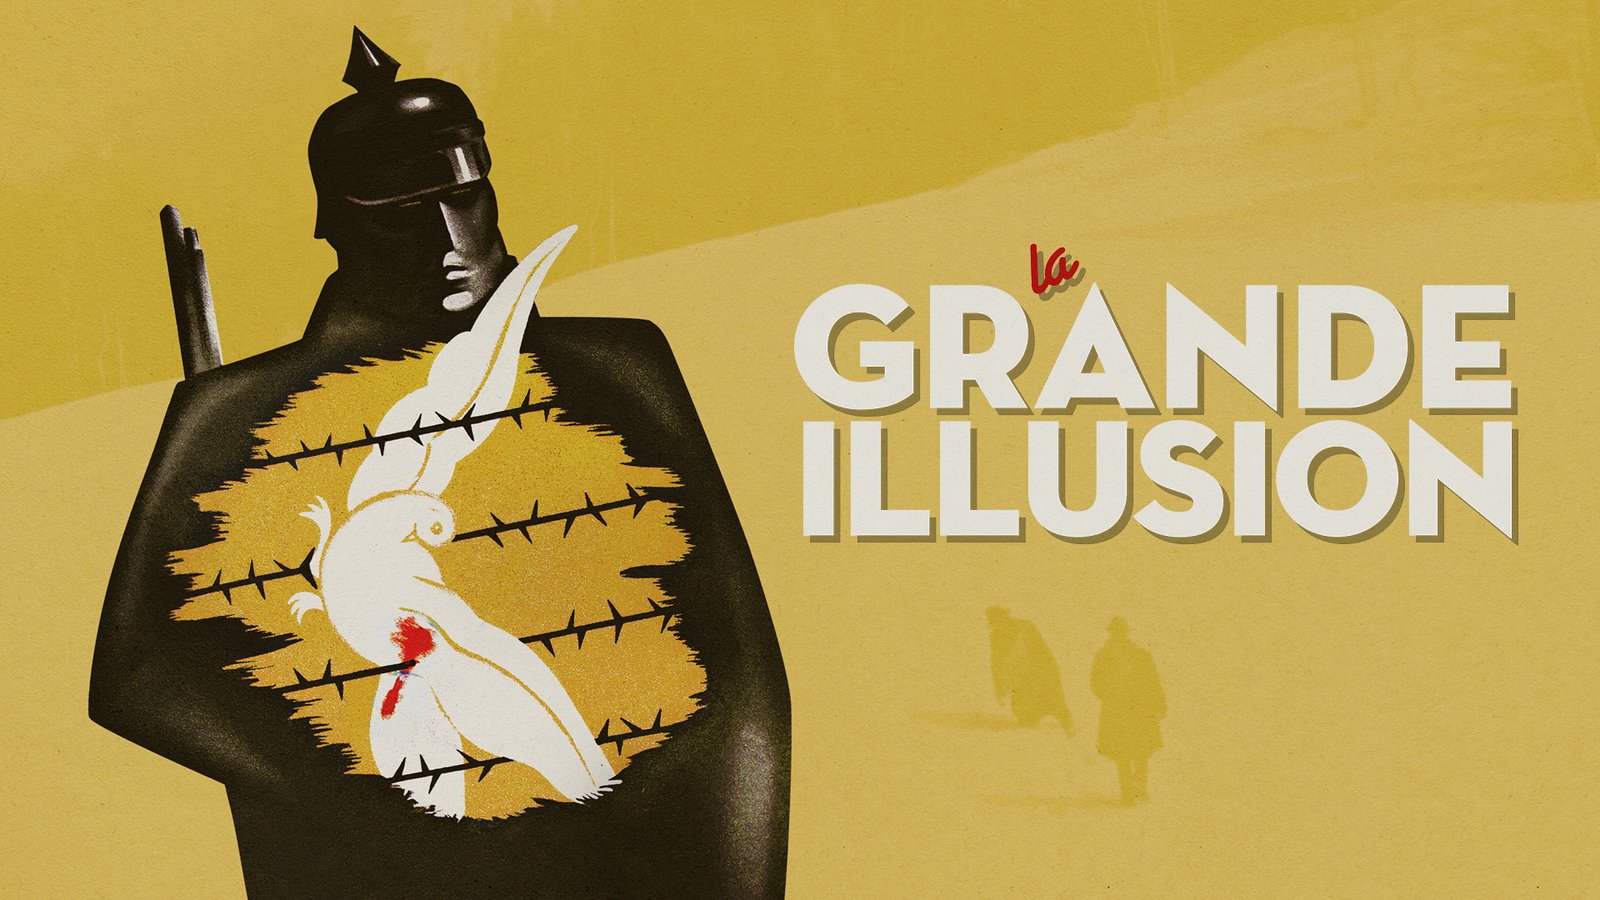 La Grande Illusion - The Grand Illusion